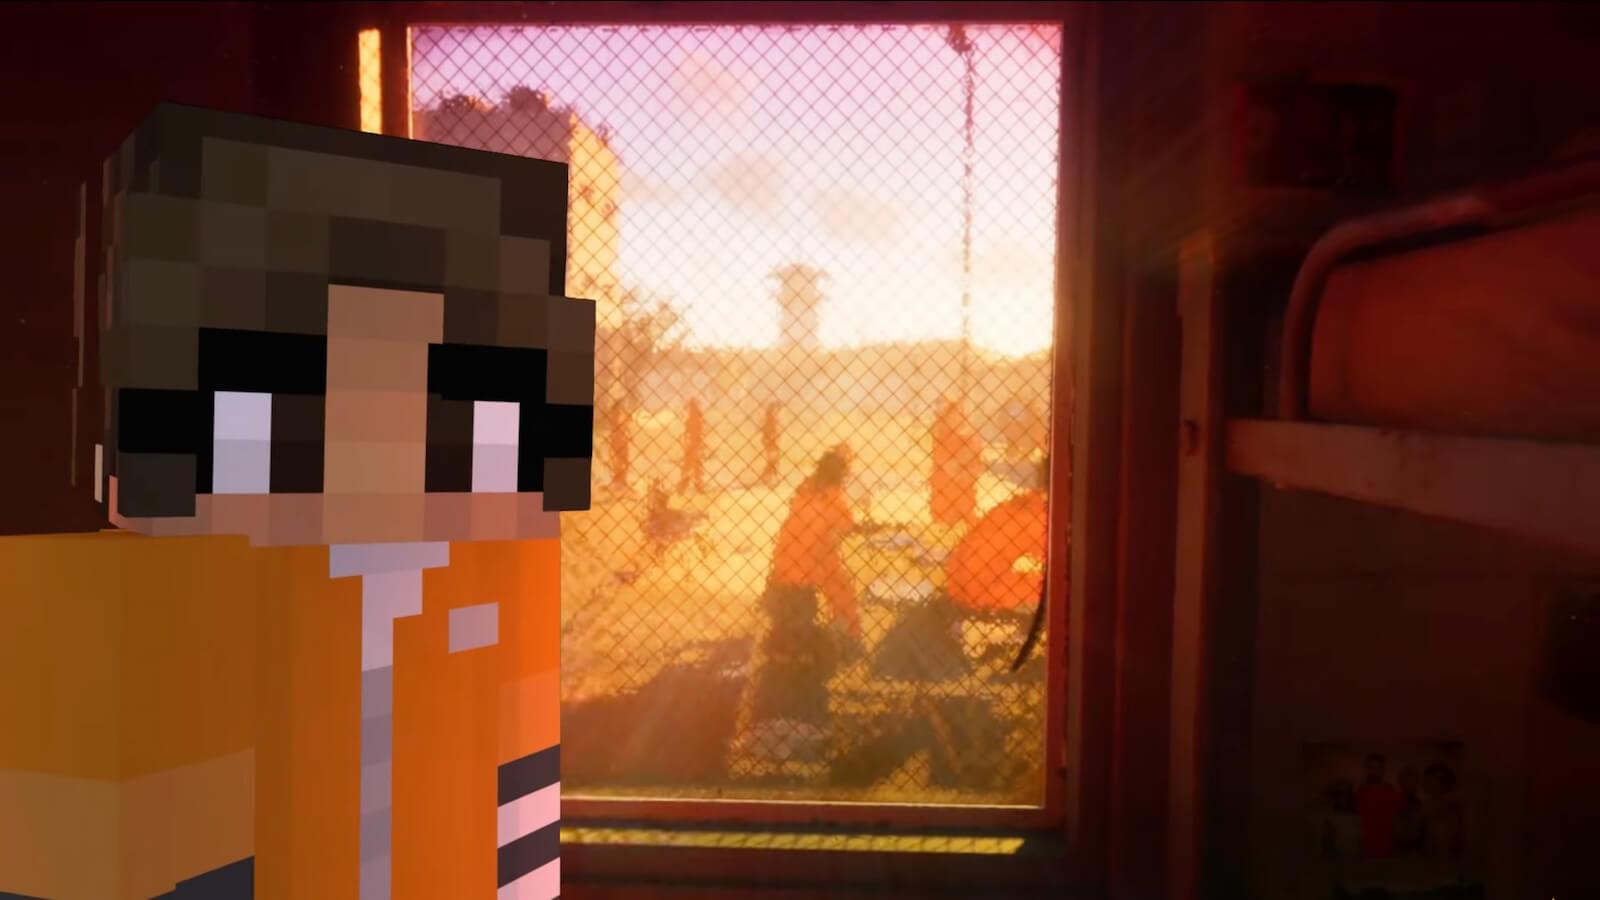 GTA 6 fan recreates trailer in Minecraft